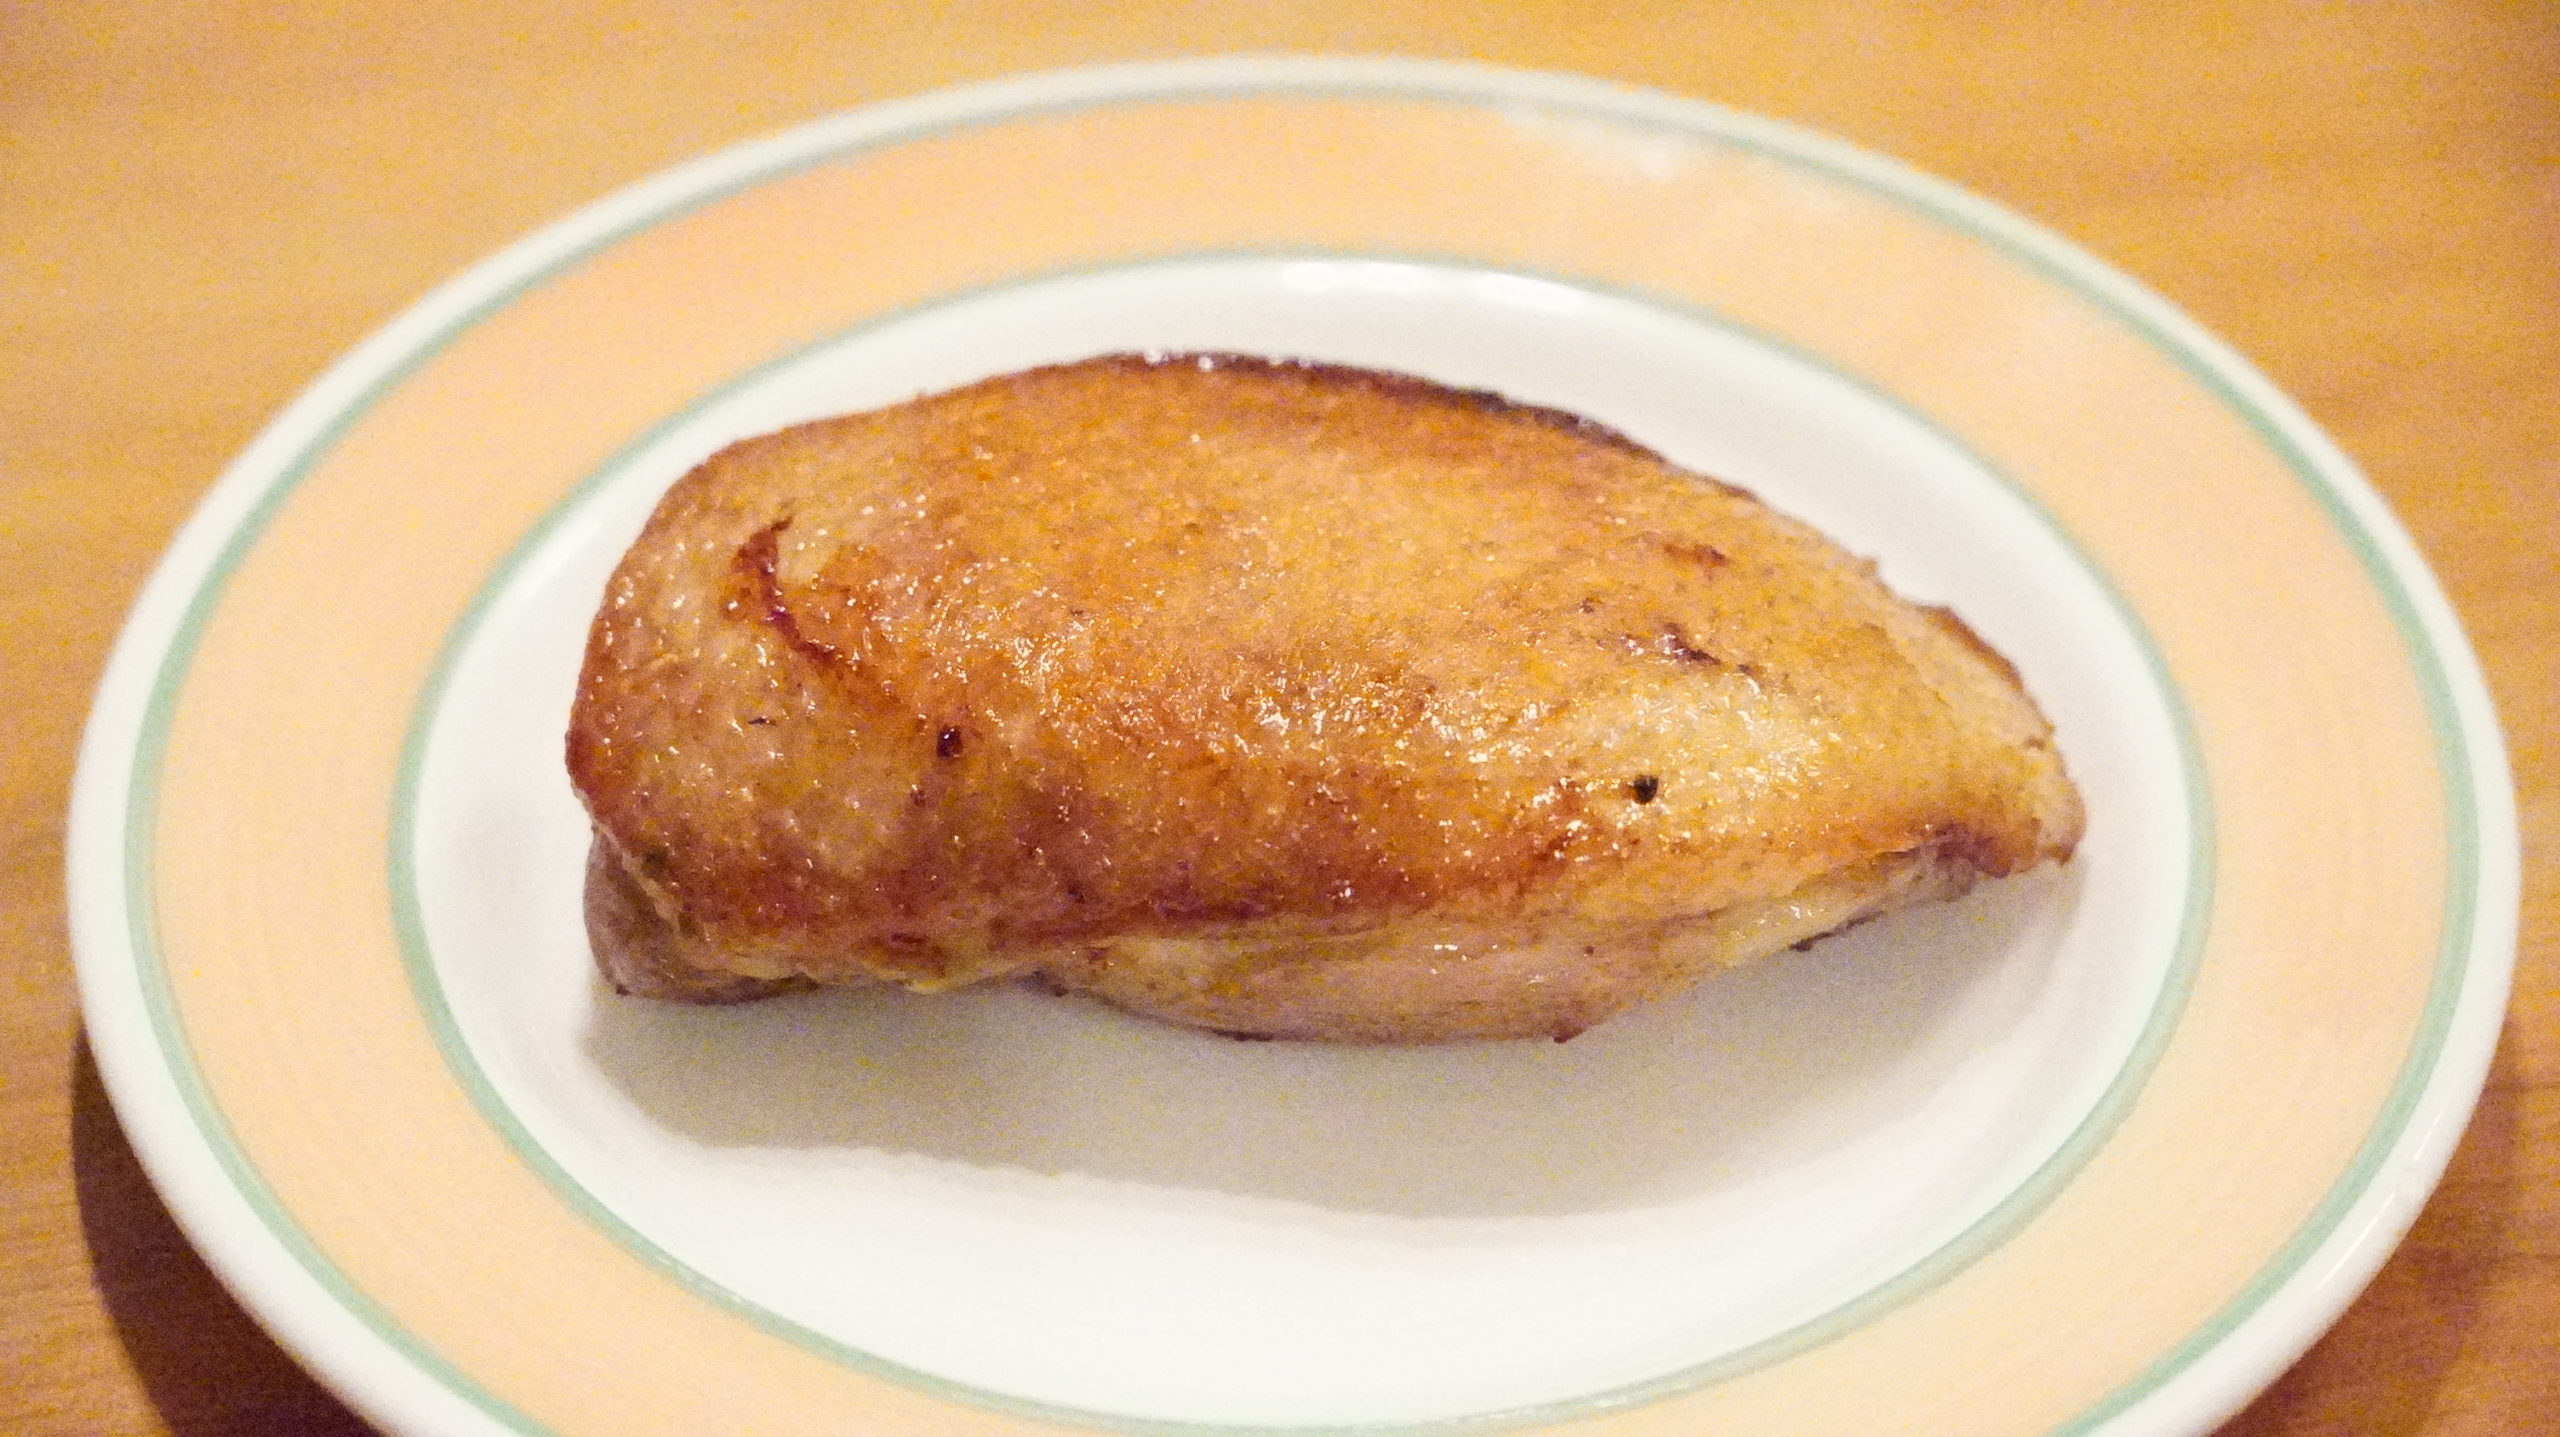 ピカールの冷凍食品「フランス南西部産マグレドカナール」の焼き上がり直後の写真